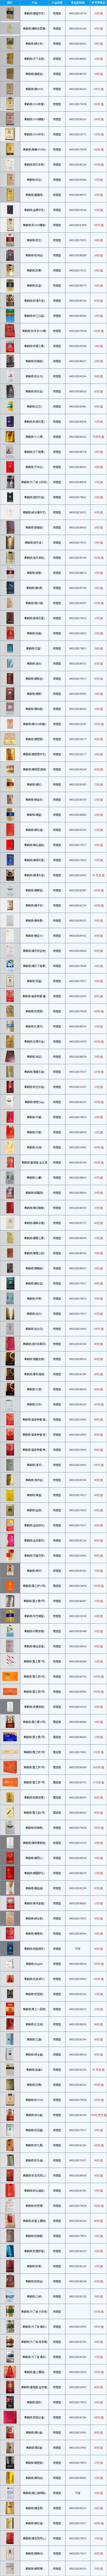 北京黄鹤楼香烟价格表图大全一览表零售